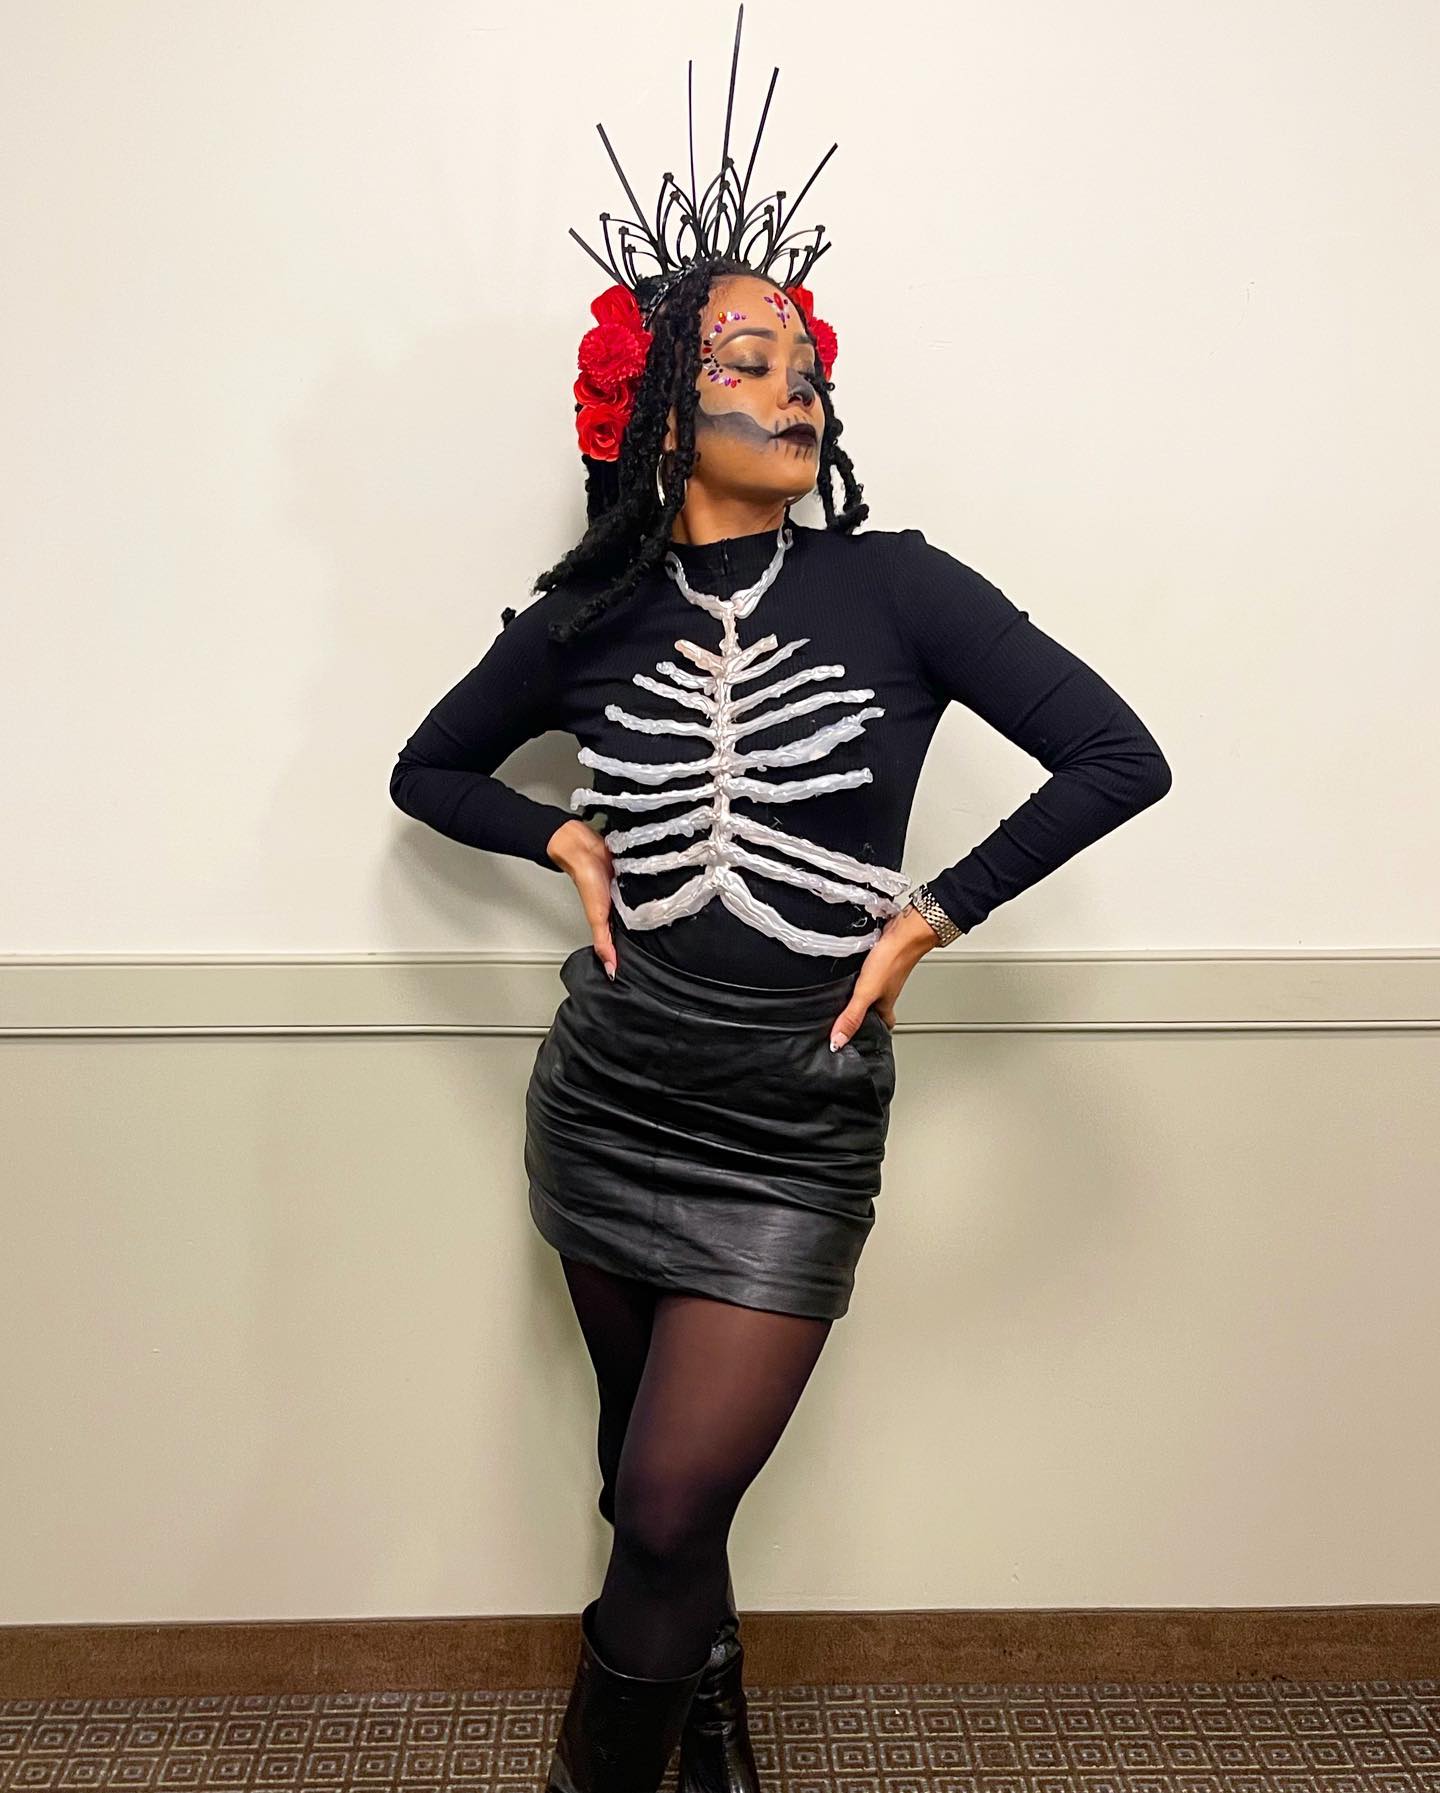 Fantasias Halloween femininas improvisadas: inspire-se em 15 ideias